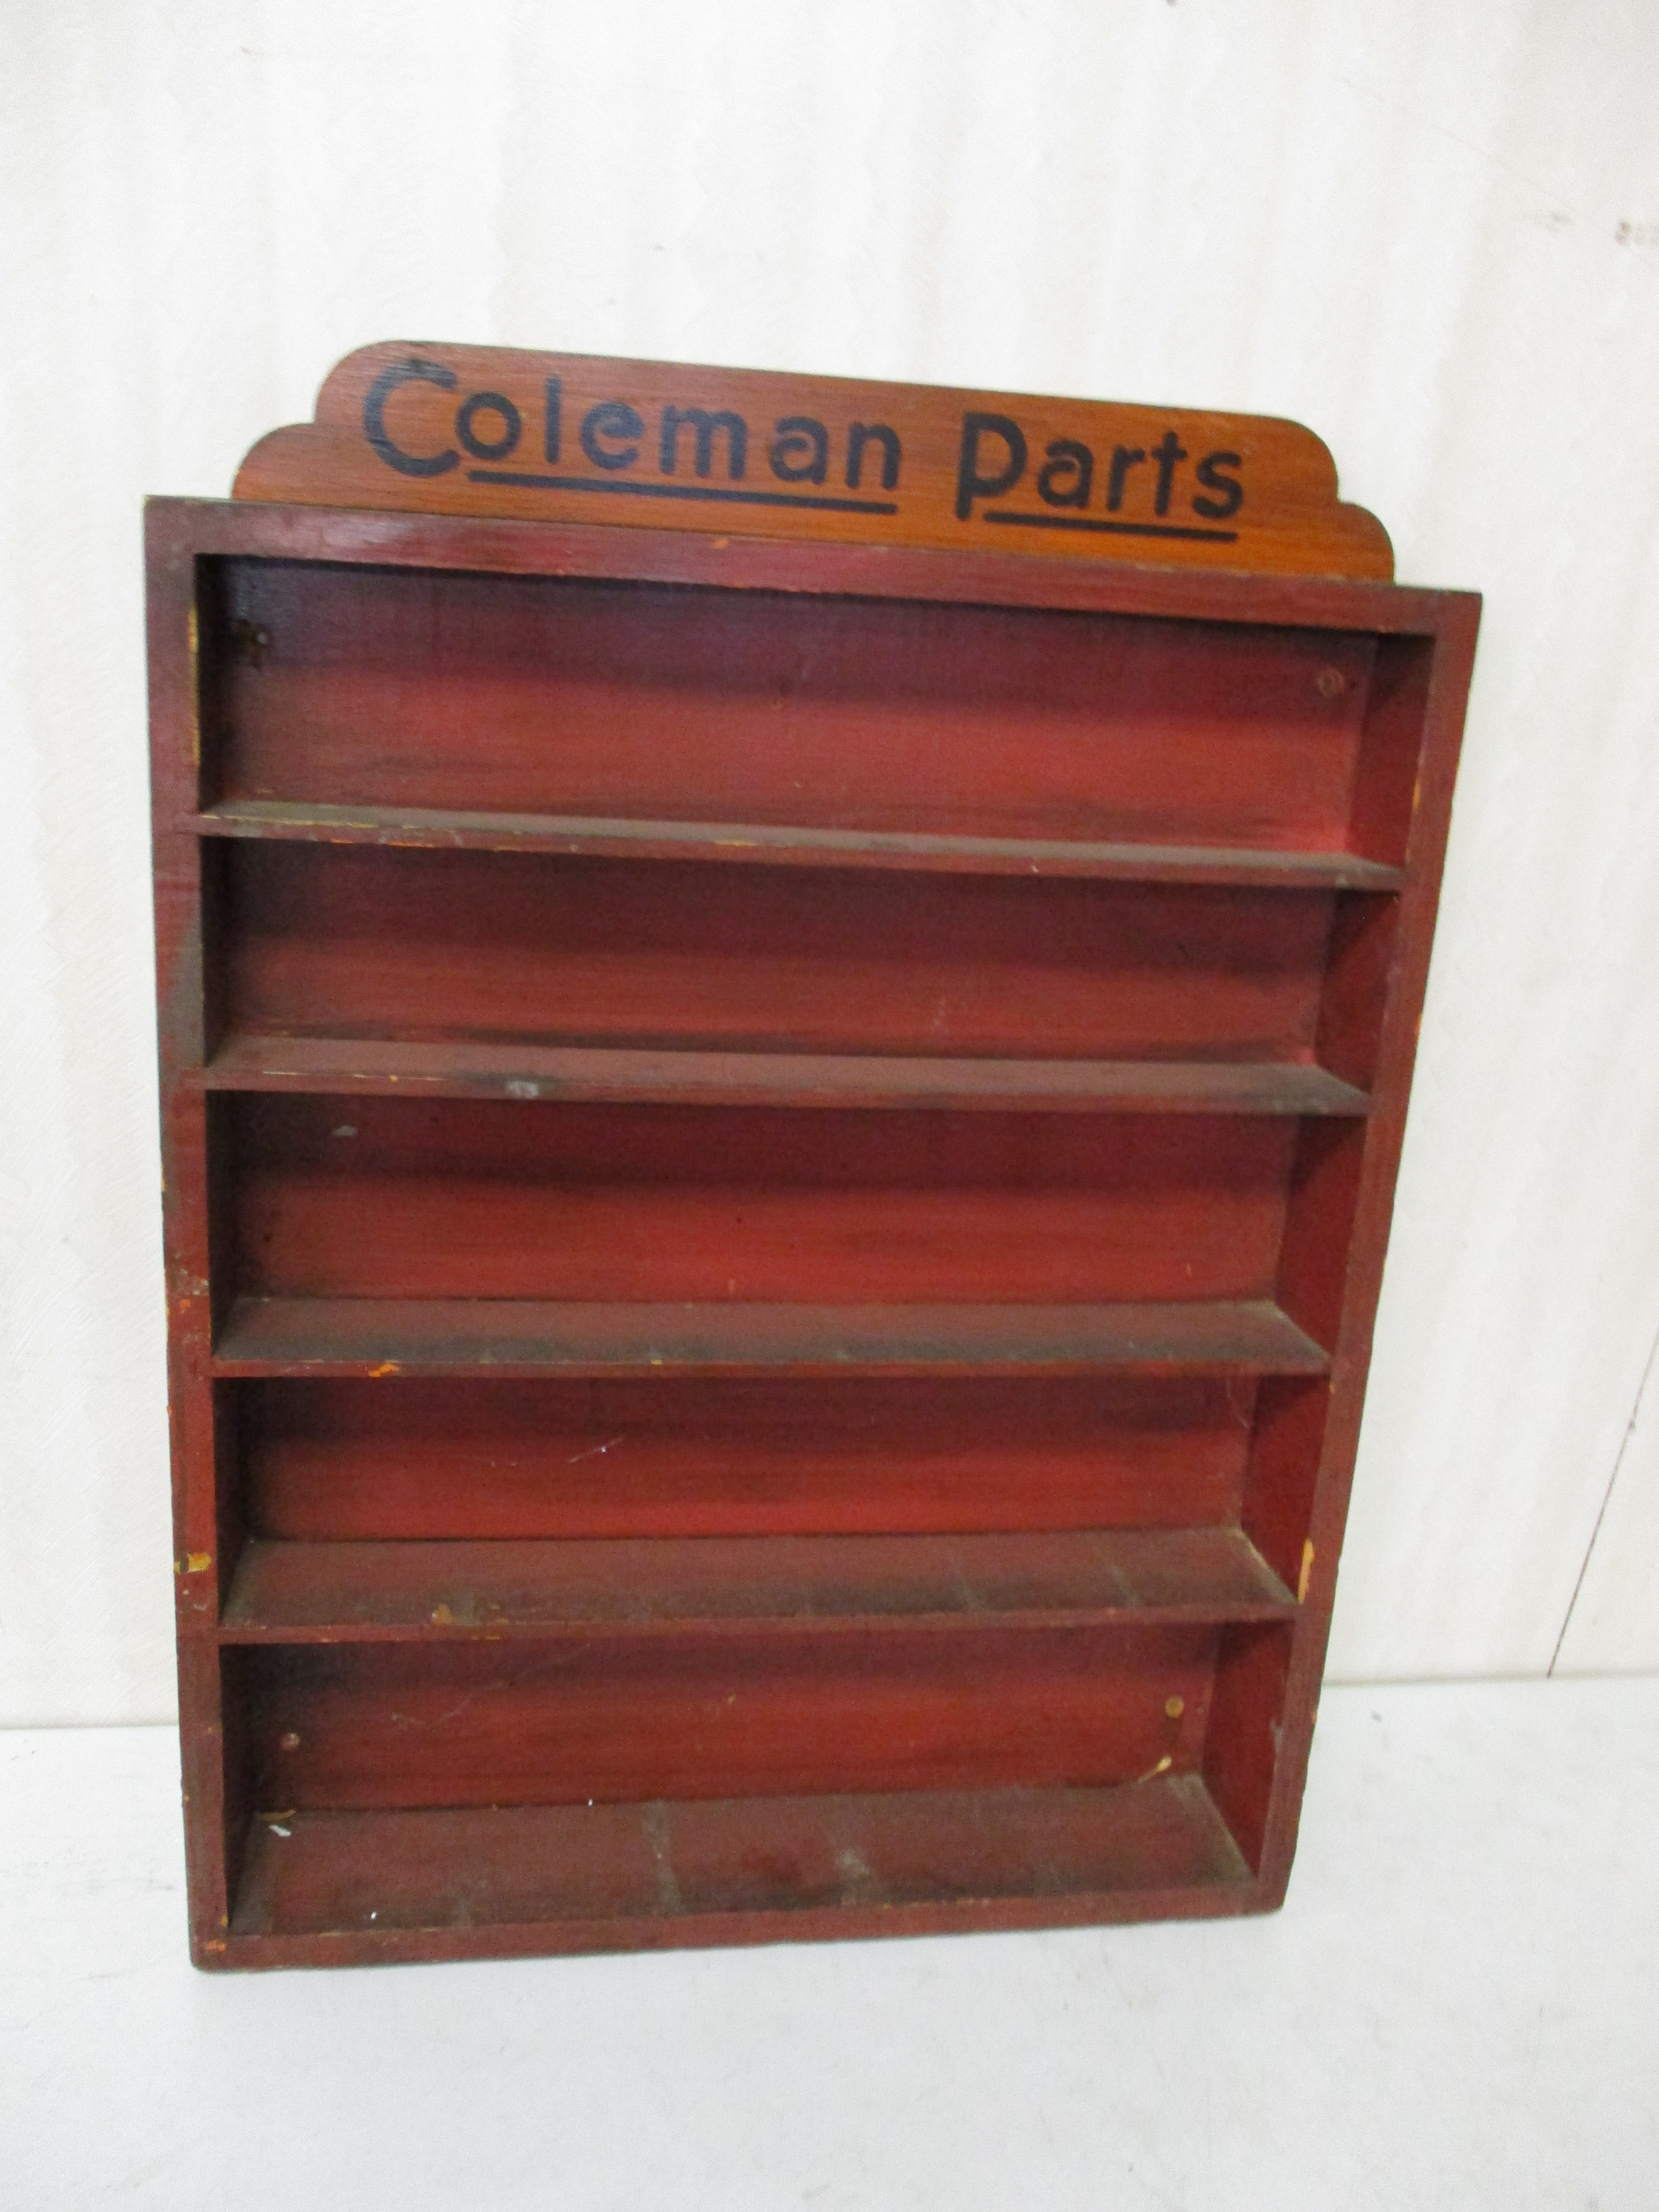 Lot 195: Coleman Parts Shelf - 22" X 29"